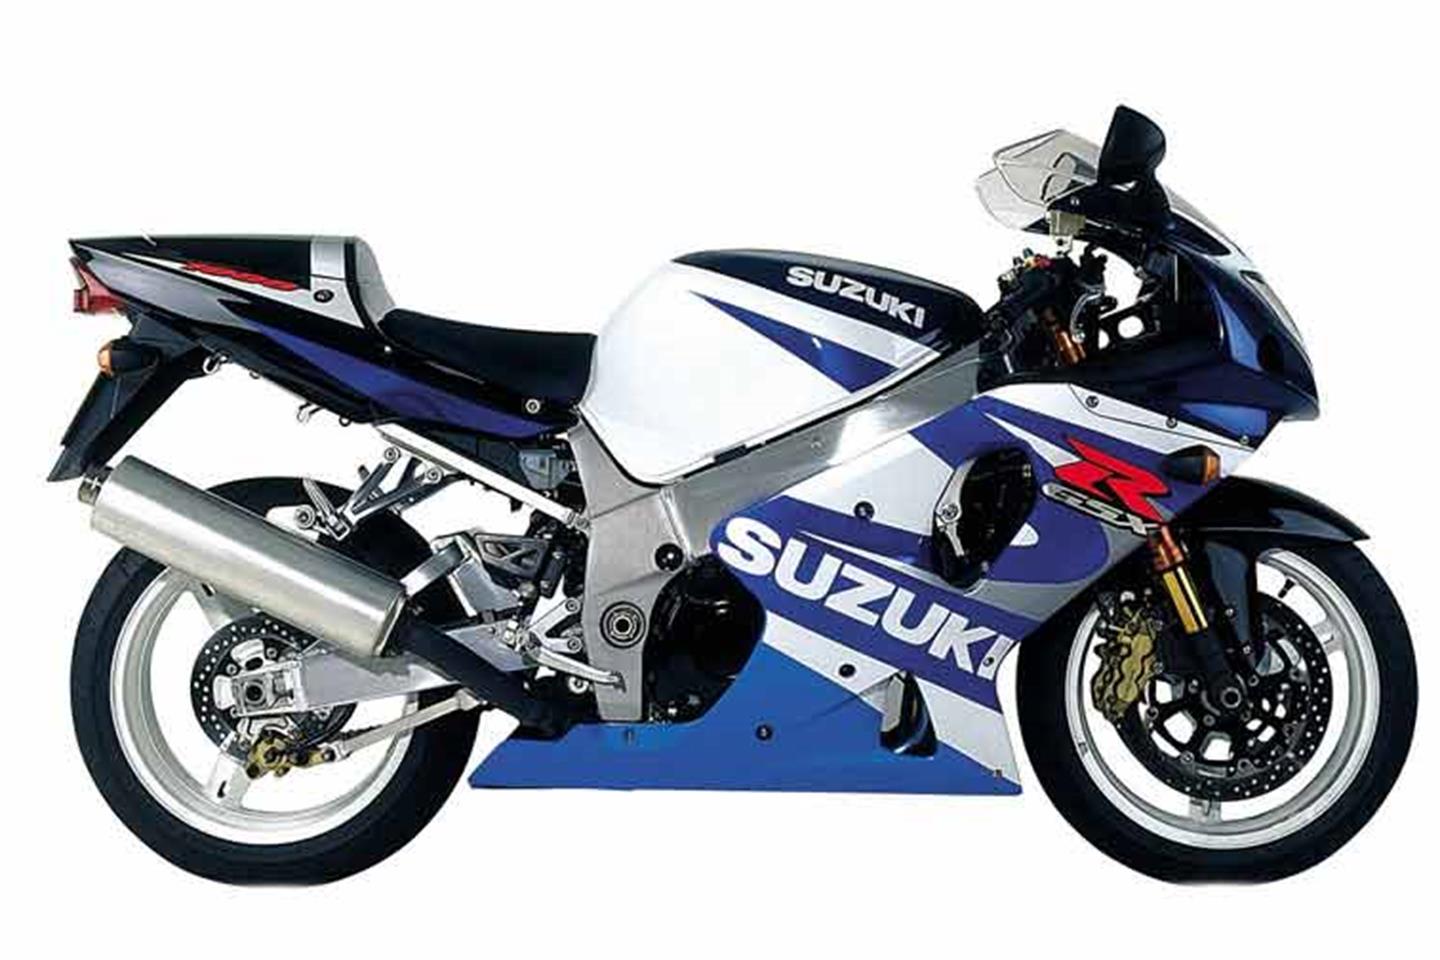 SUZUKI GSX-R1000 (2001-2002) Review | Specs & Prices